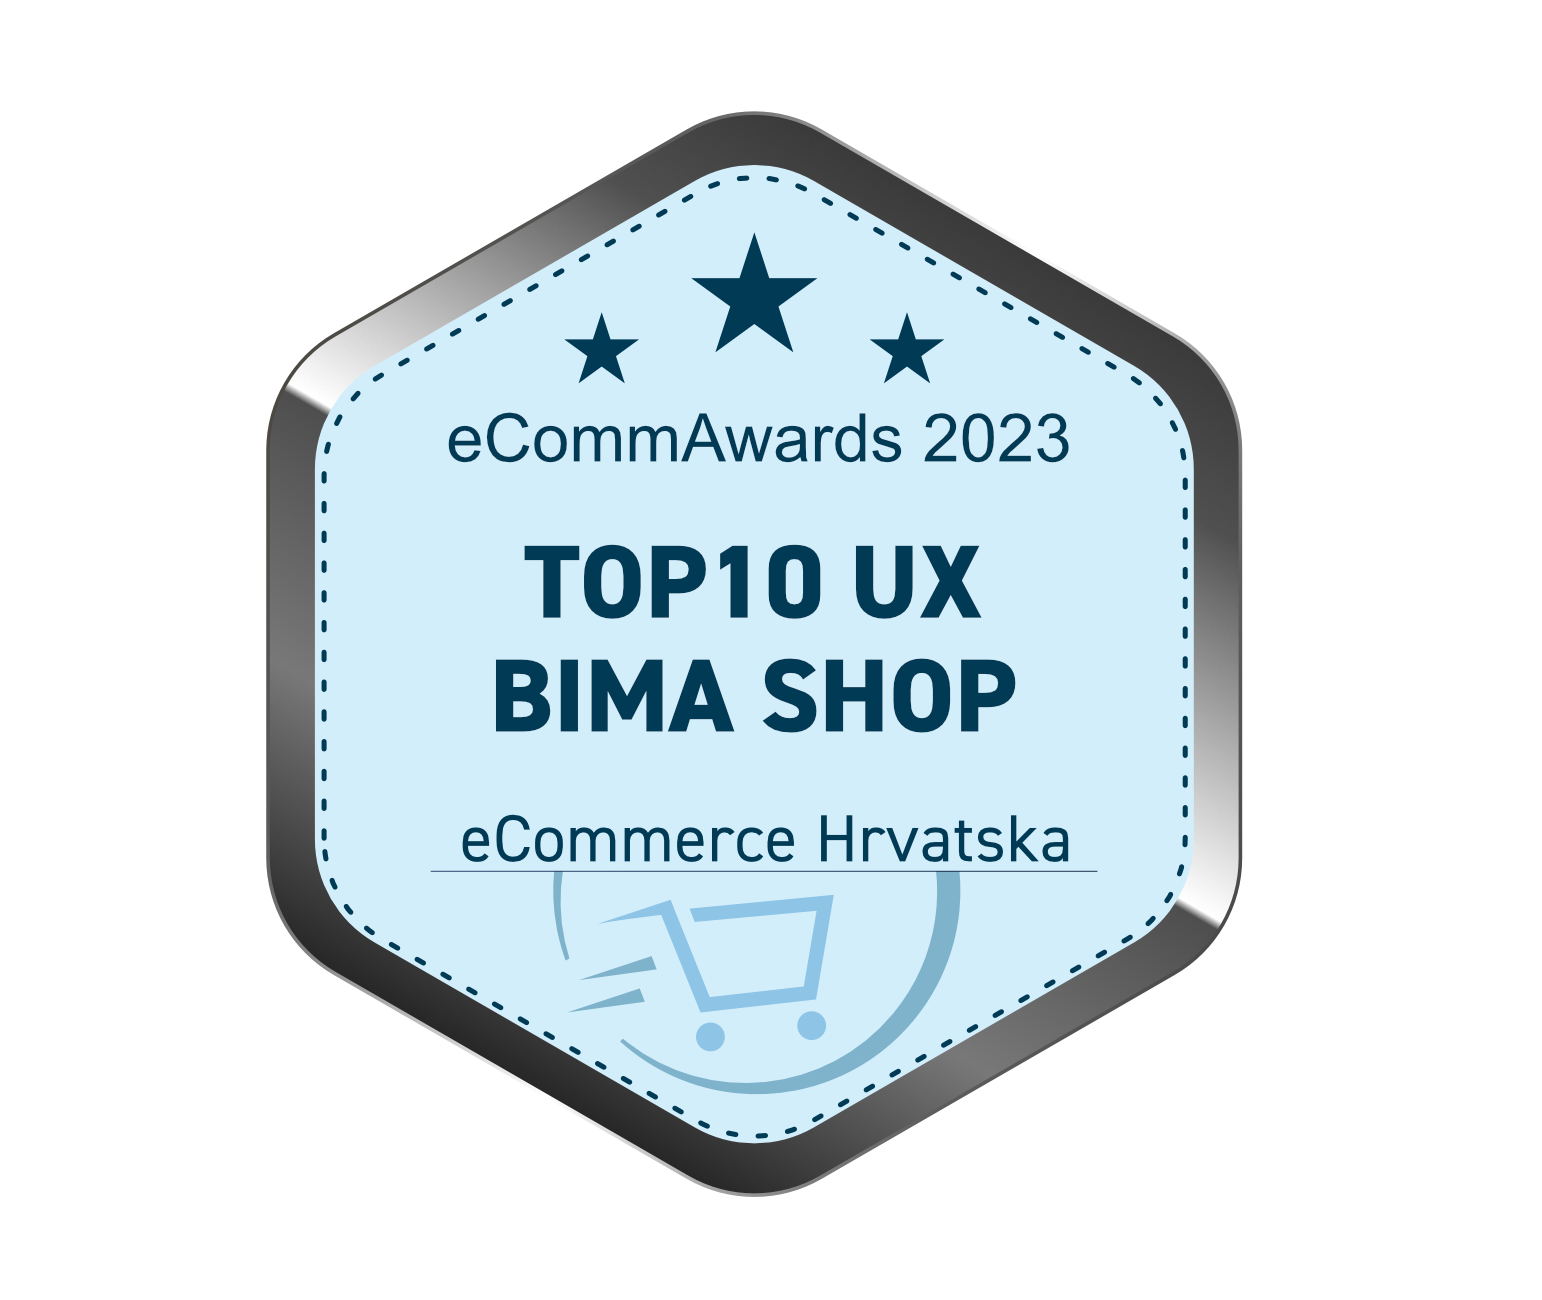 Bima shop ux award